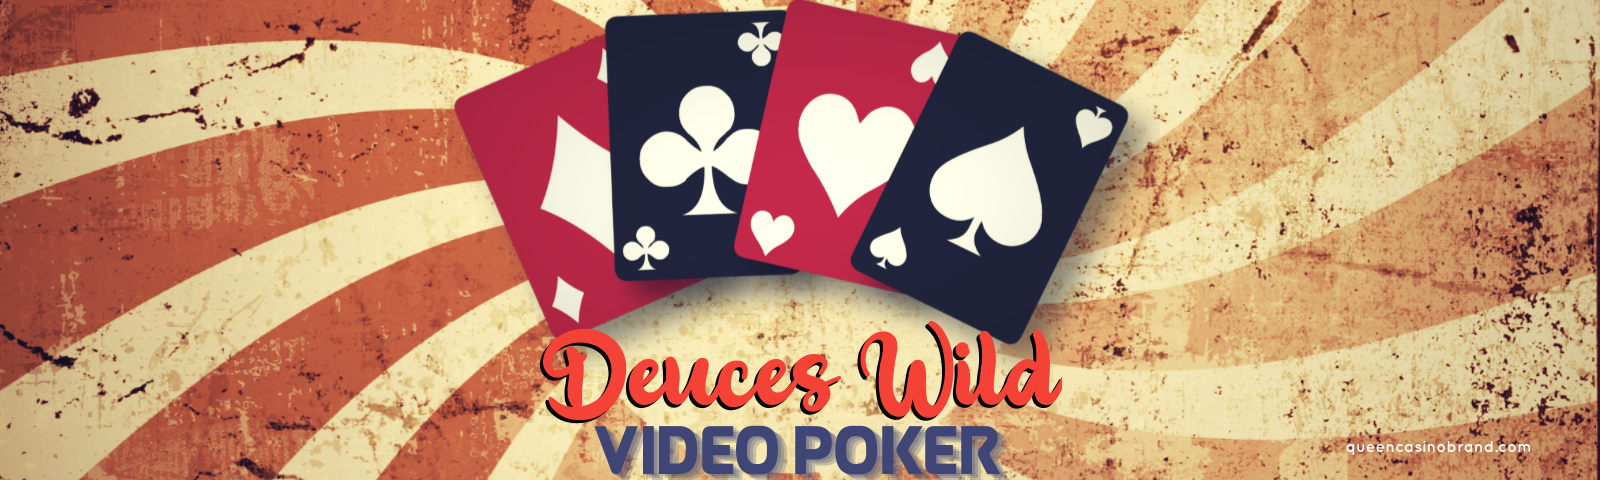 Deuces Wild Video Poker Overview | Queen Casino Brand